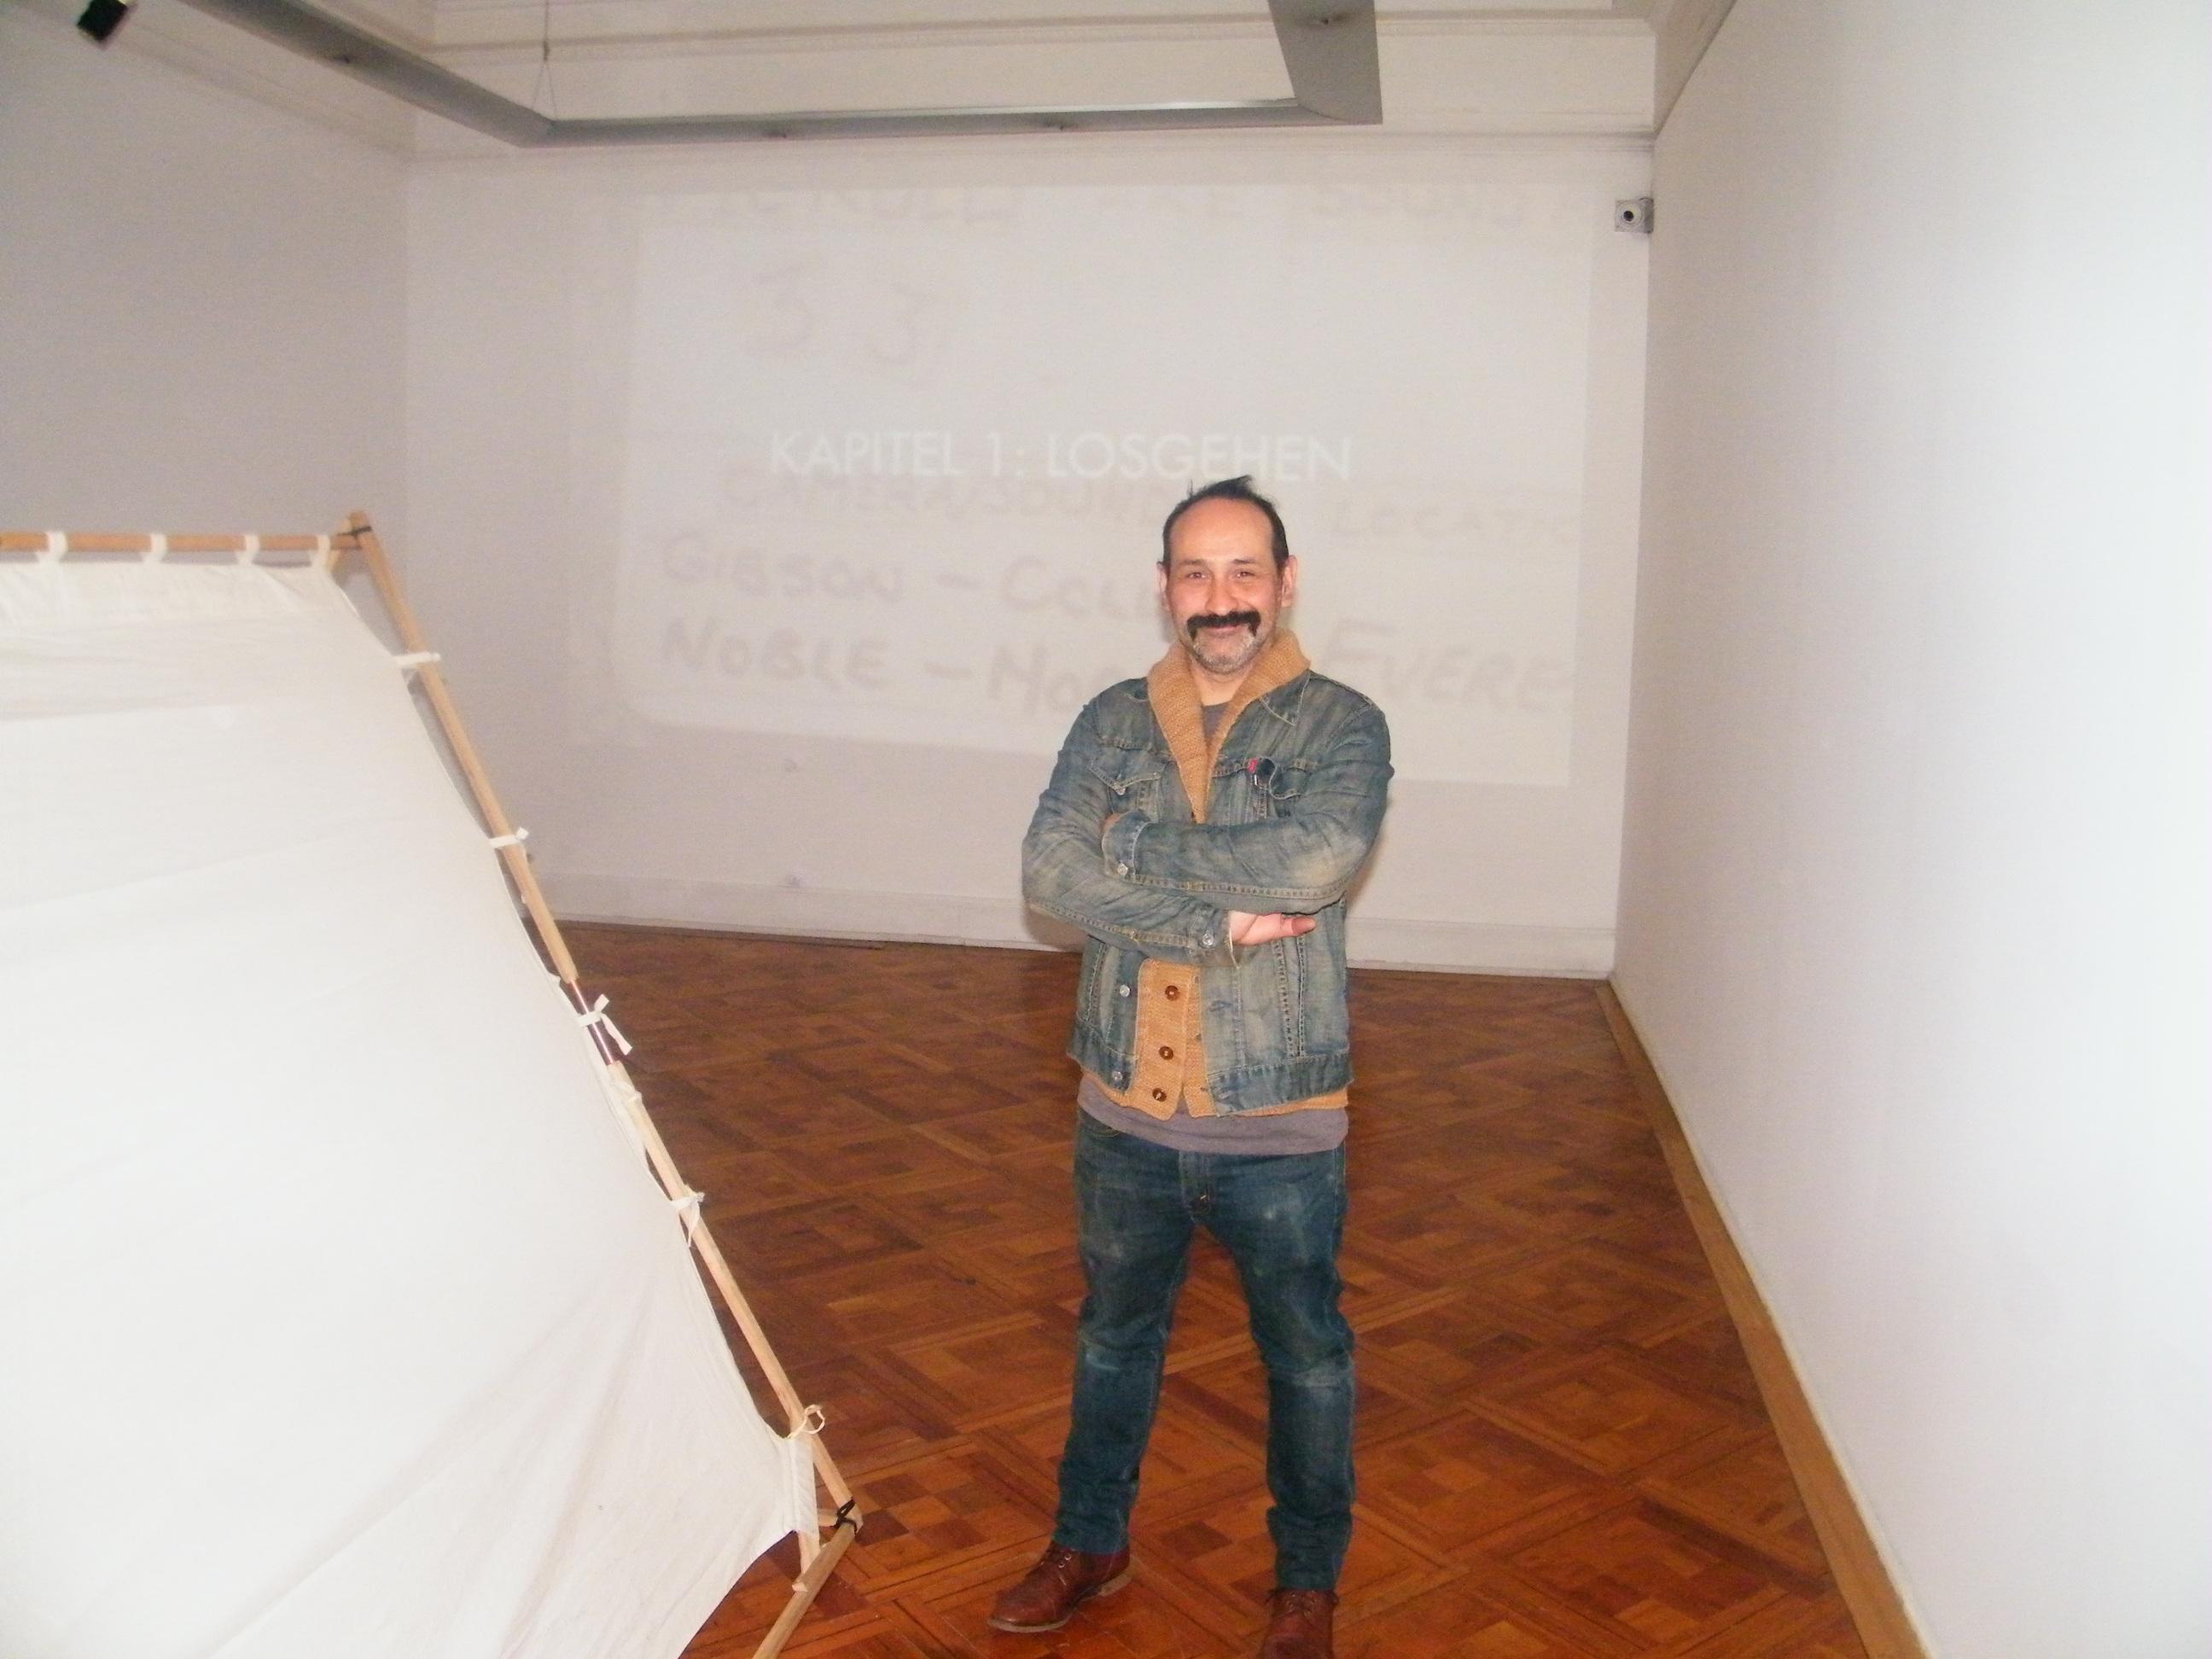 Académico Rodrigo Dueñas en exposición de La Nueva Gráfica Chilena.